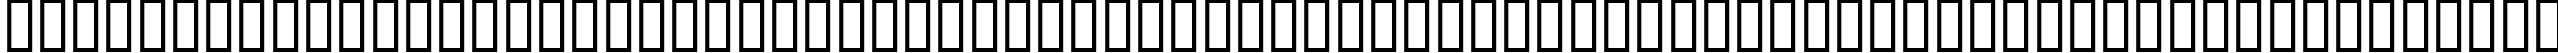 Пример написания английского алфавита шрифтом BDGalaQuadra